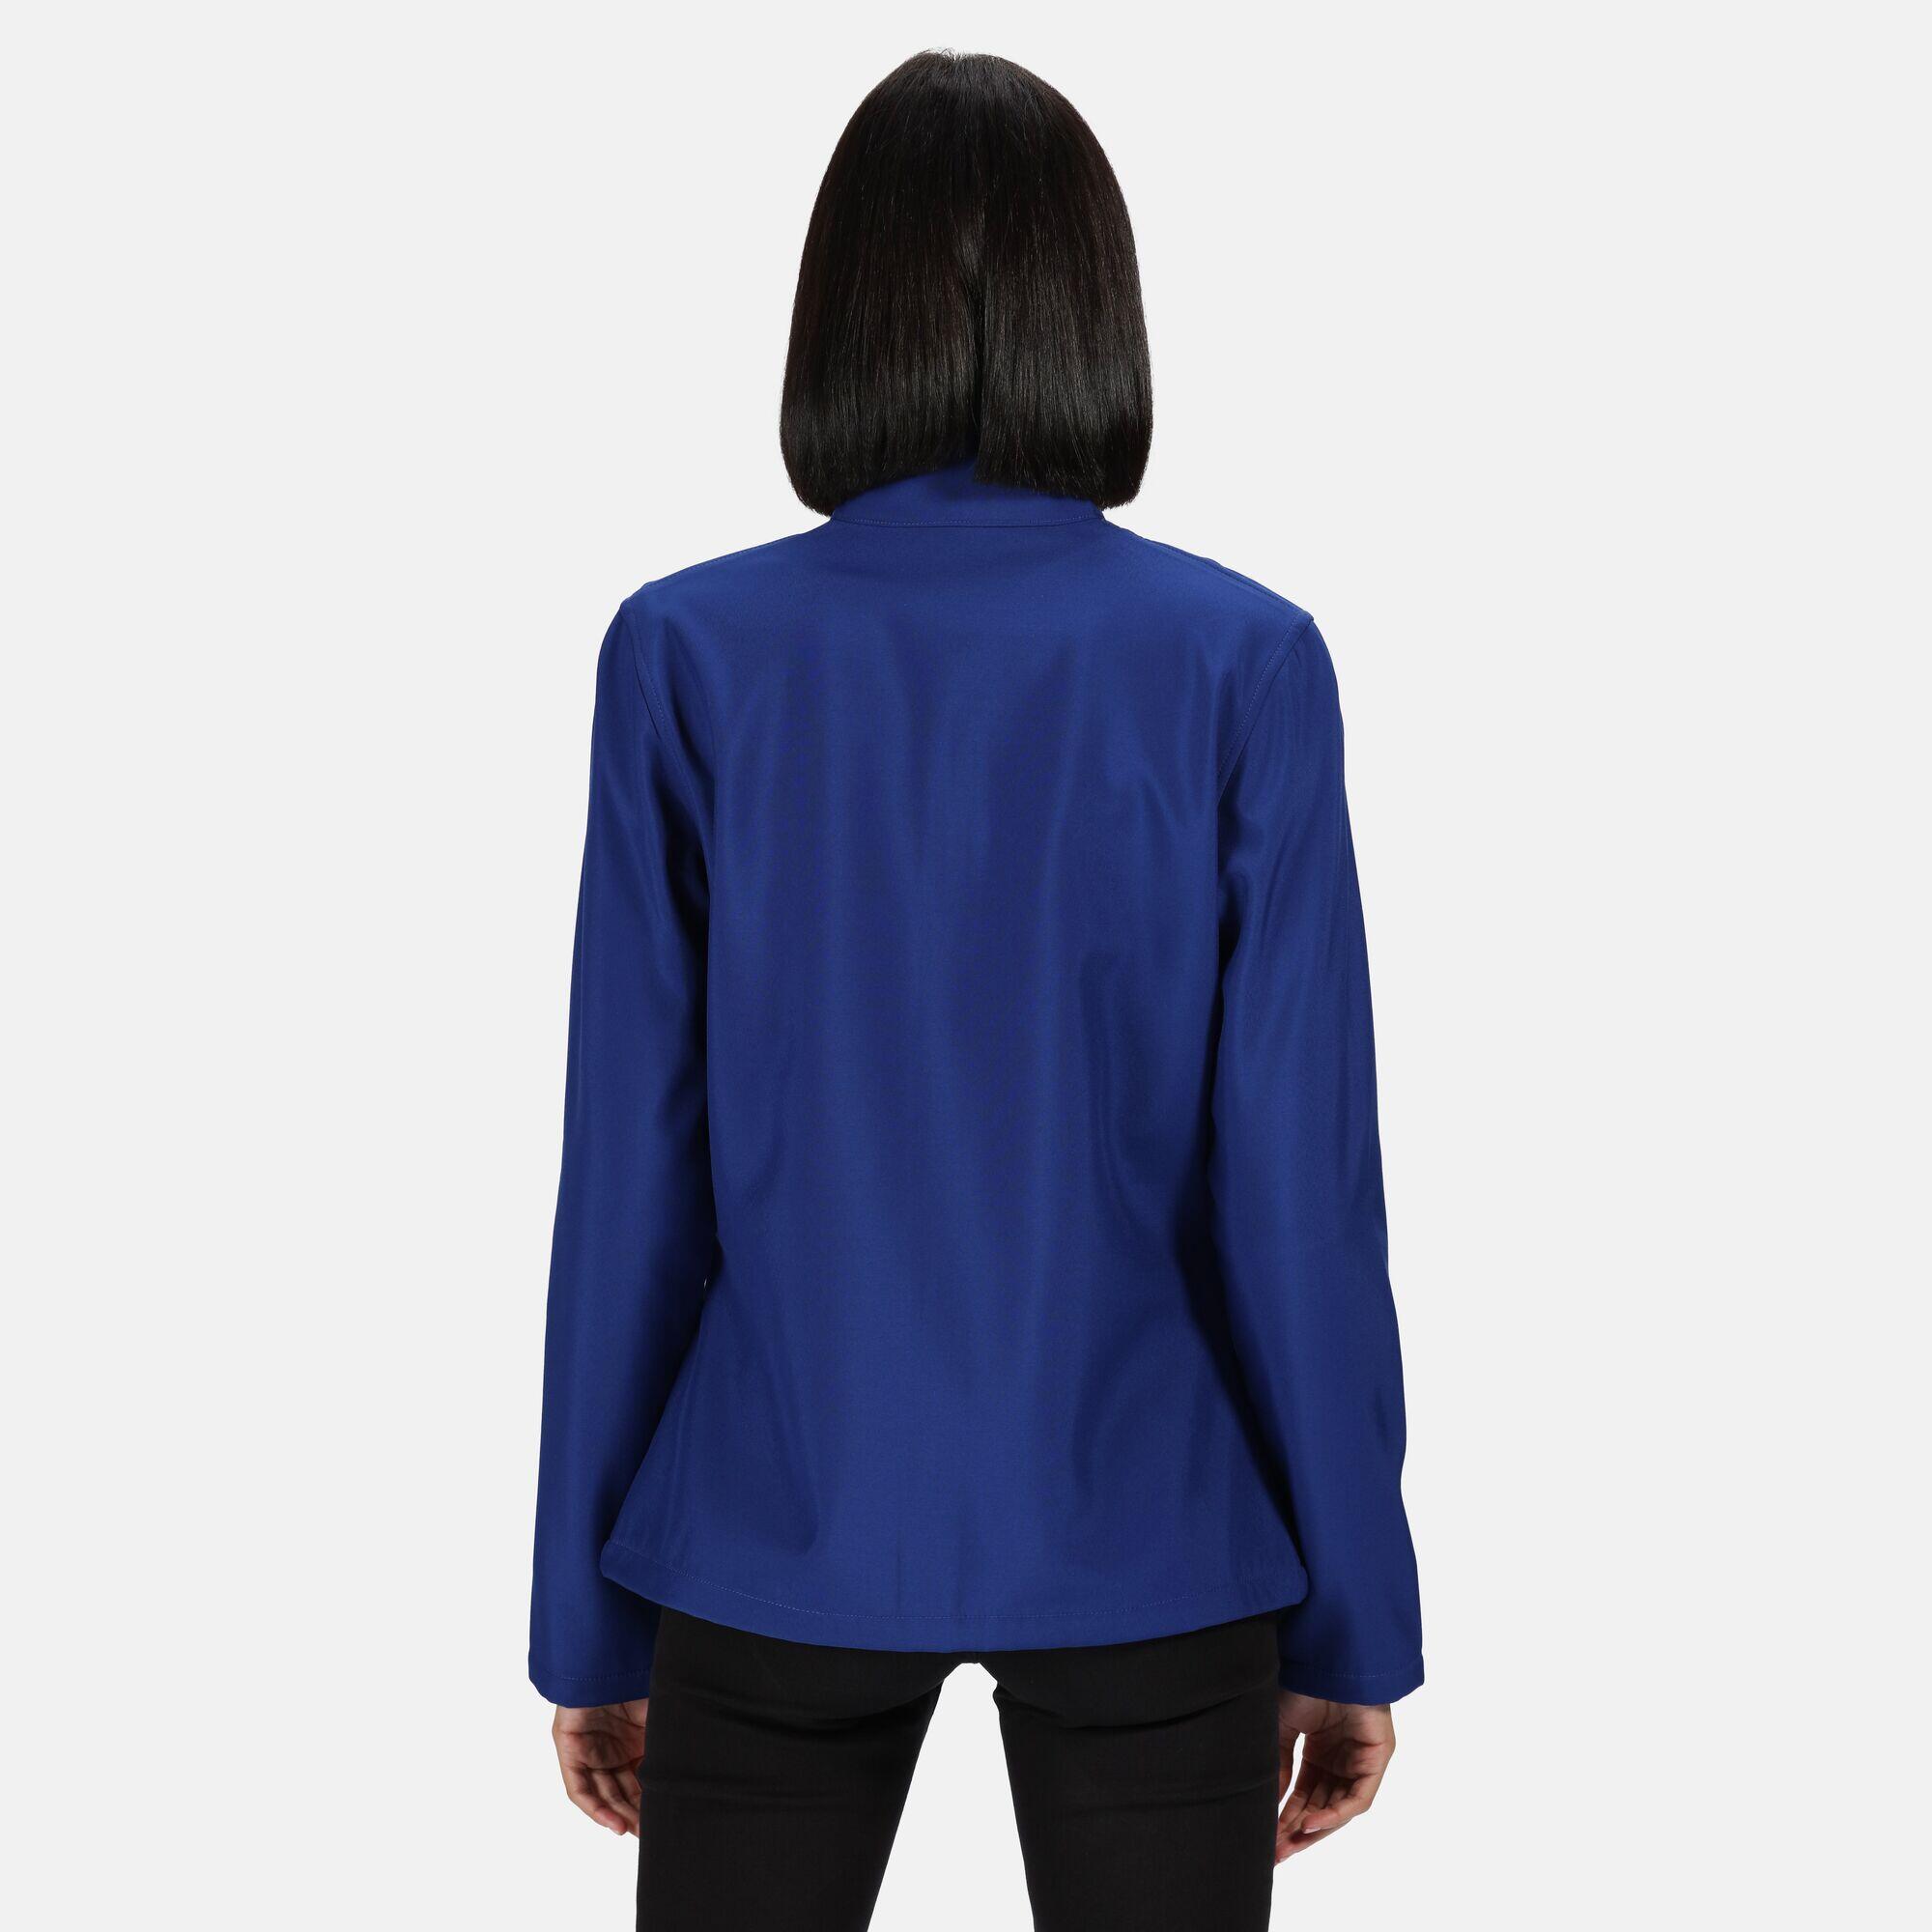 Womens/Ladies Ablaze Printable Softshell Jacket (Royal Blue/Black) 4/5